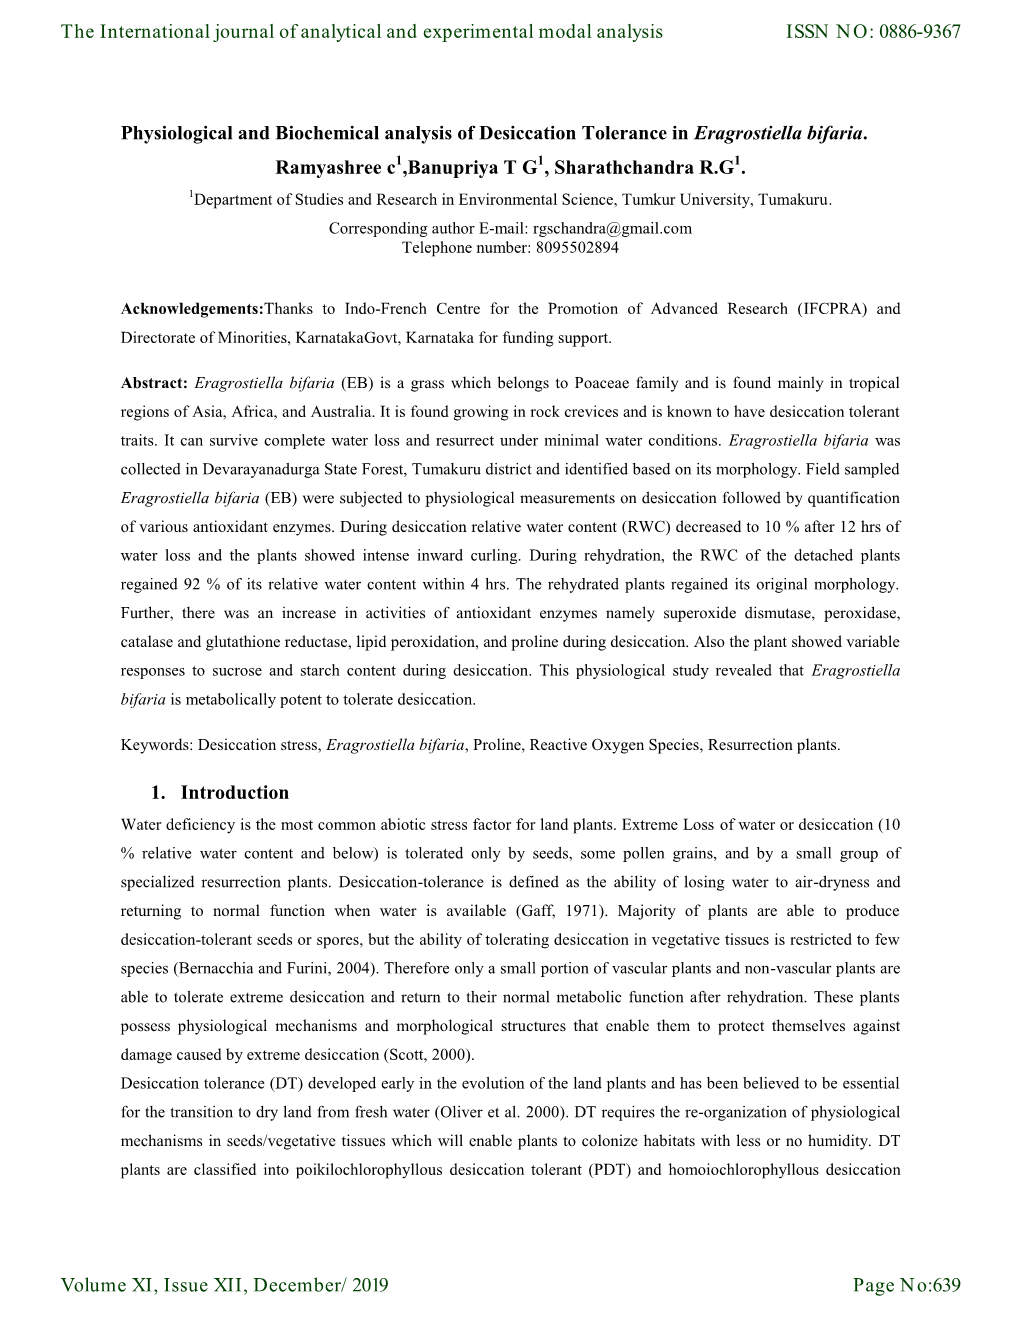 Physiological and Biochemical Analysis of Desiccation Tolerance in Eragrostiella Bifaria. Ramyashree C ,Banupriya T G , Sharathc